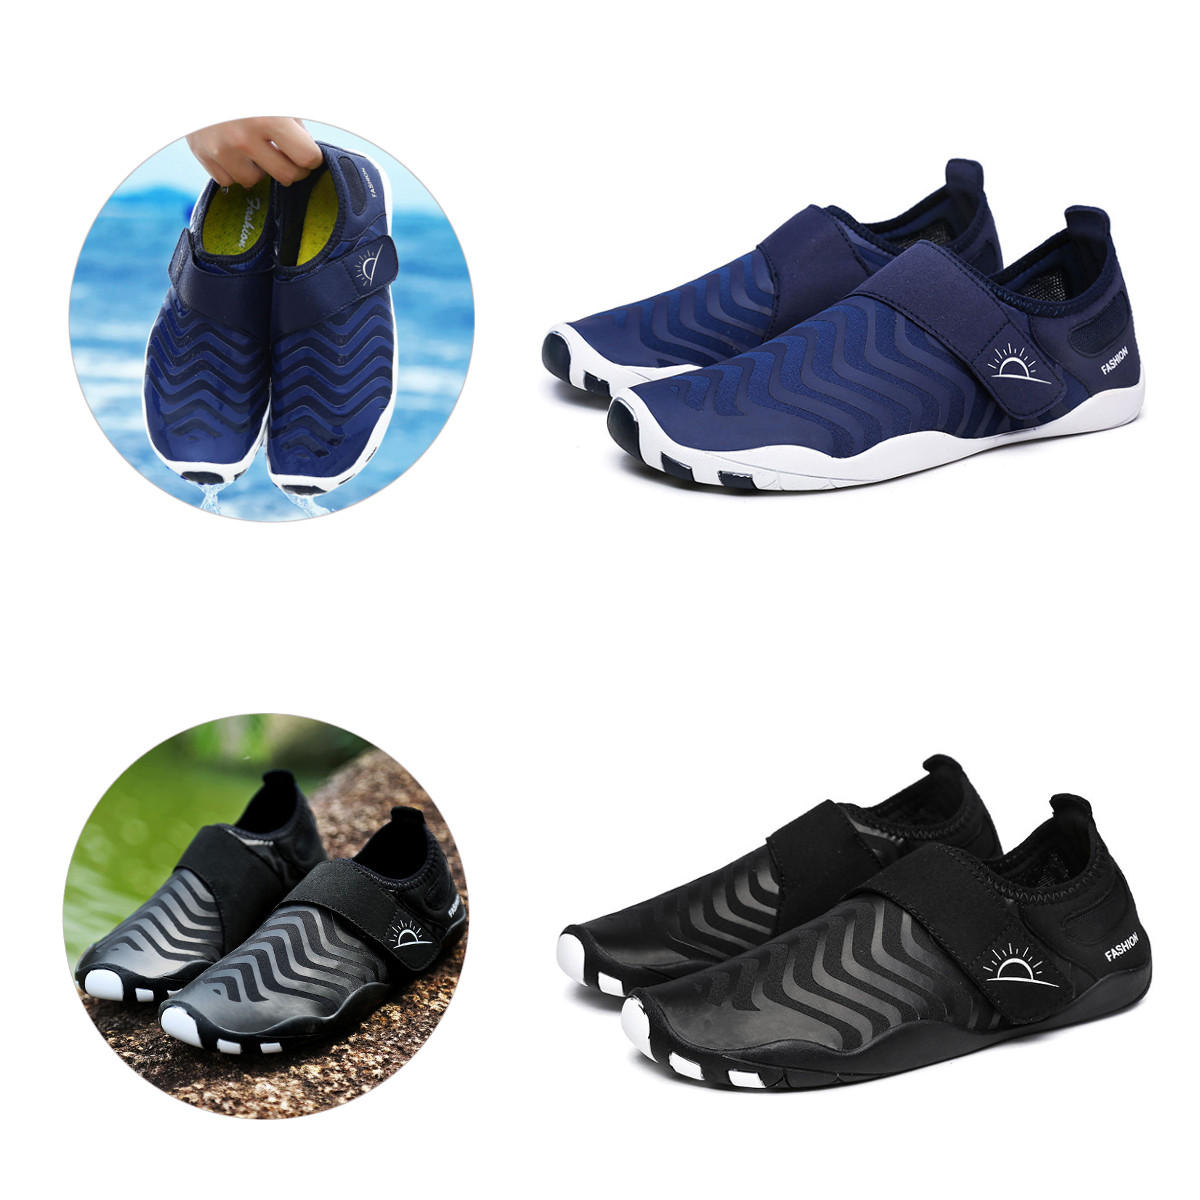 Chaussures de wading ultralégères rayées, séchage rapide, faciles à enfiler, idéales pour les sports de plein air, la natation et le yoga.